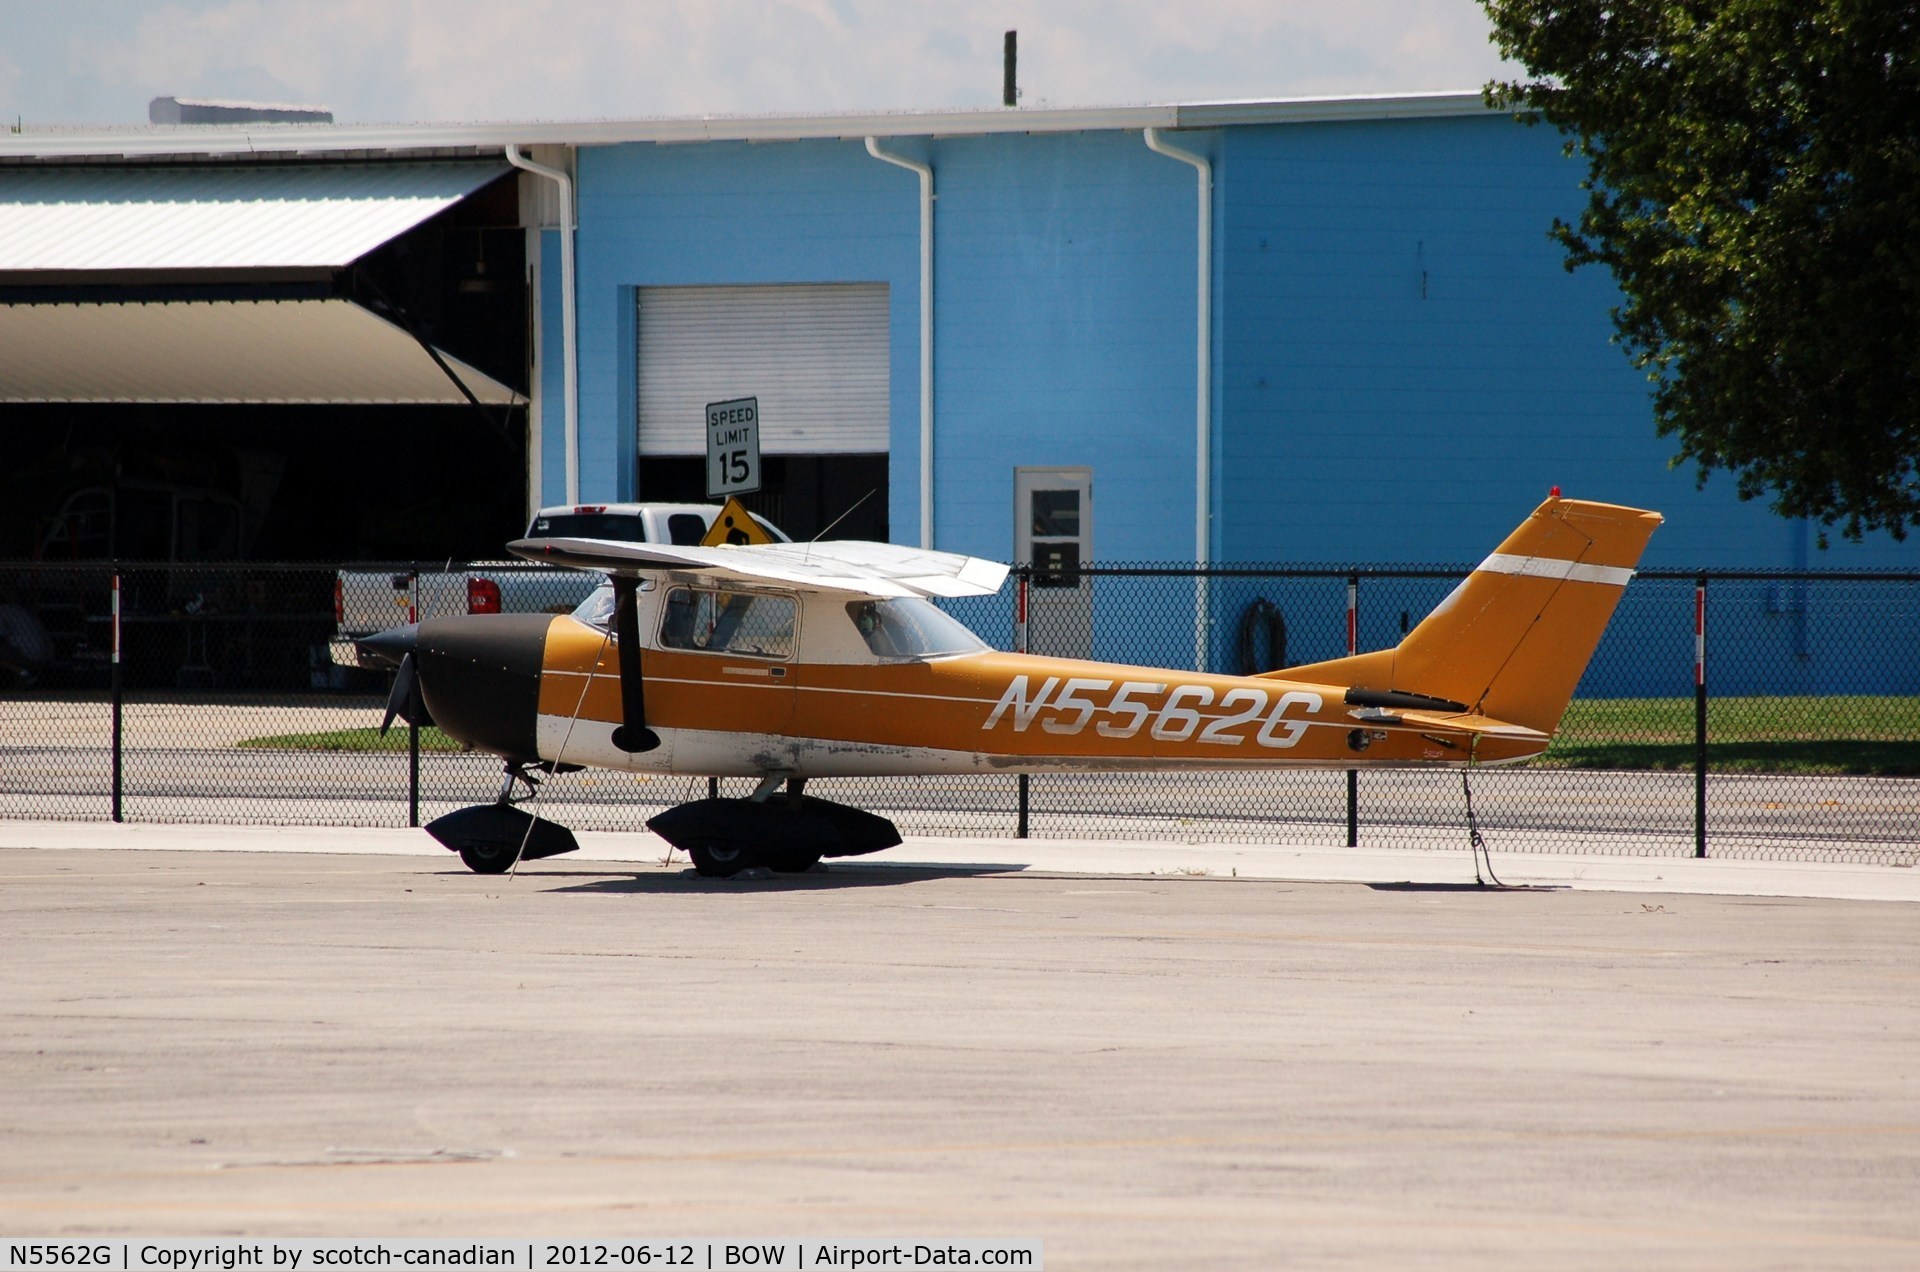 N5562G, 1969 Cessna 150J C/N 15071062, 1969 Cessna 150J N5562G at Bartow Municipal Airport, Bartow, FL